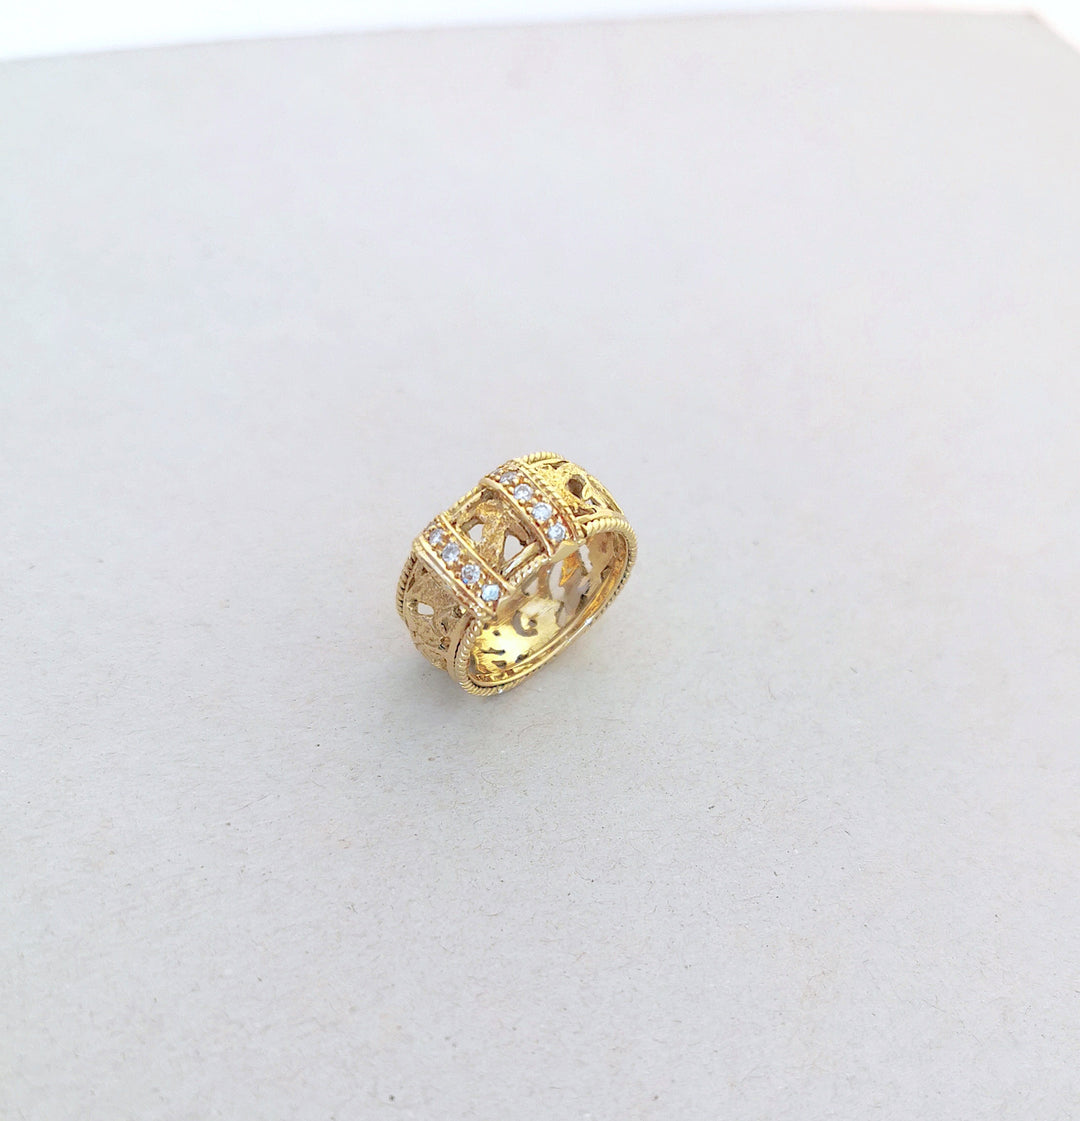 Bague ajourée / Diamants / Or Jaune 18 K gold / 750/1000 / Or 18 carats